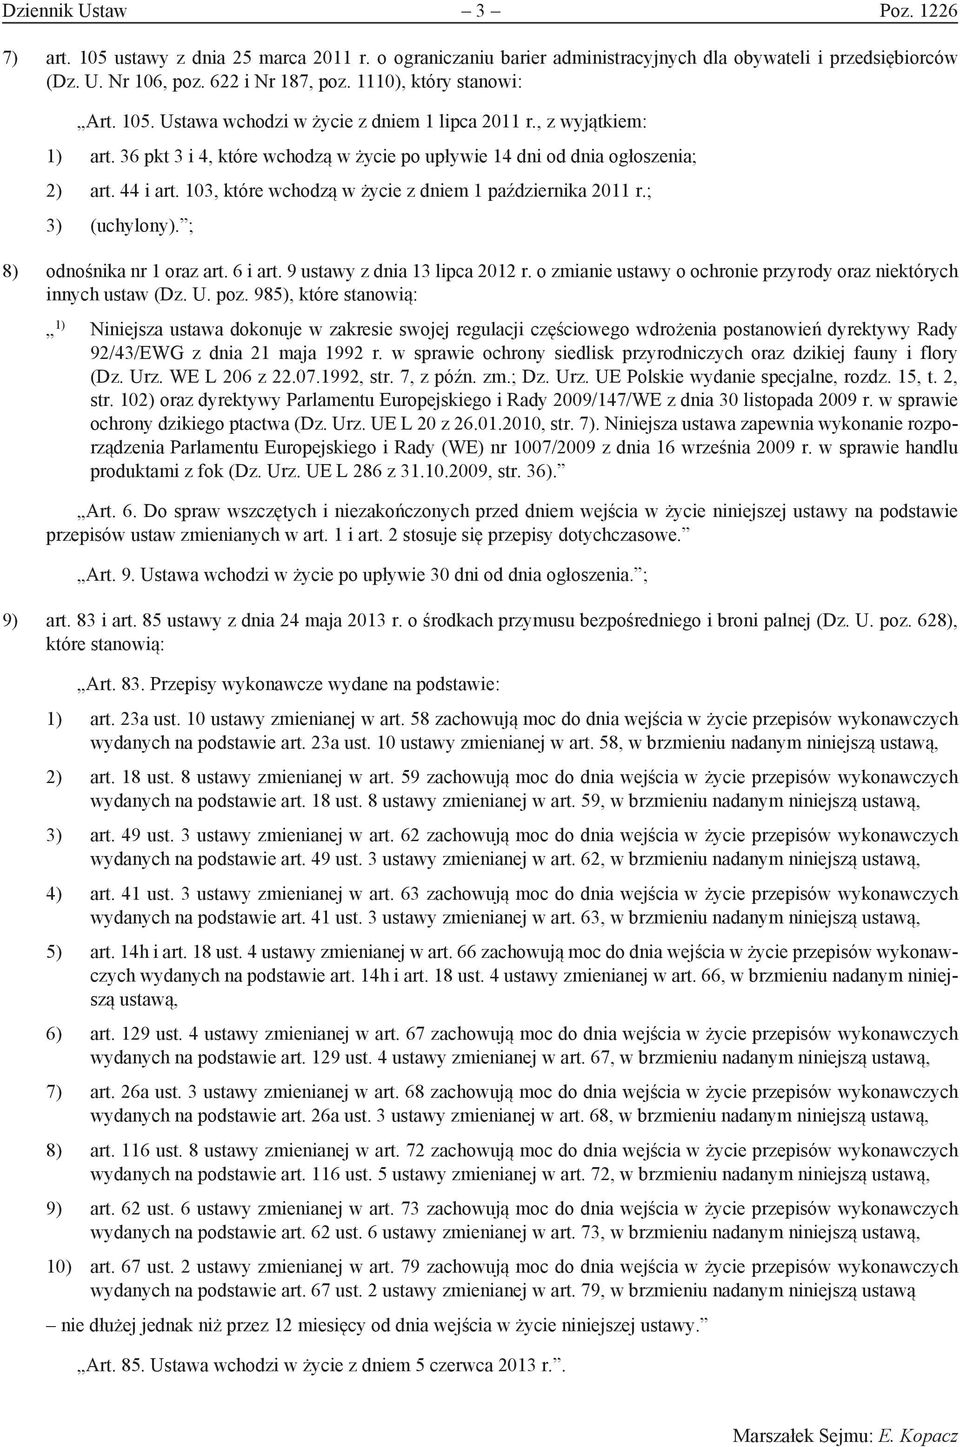 103, które wchodzą w życie z dniem 1 października 2011 r.; 3) (uchylony). ; 8) odnośnika nr 1 oraz art. 6 i art. 9 ustawy z dnia 13 lipca 2012 r.